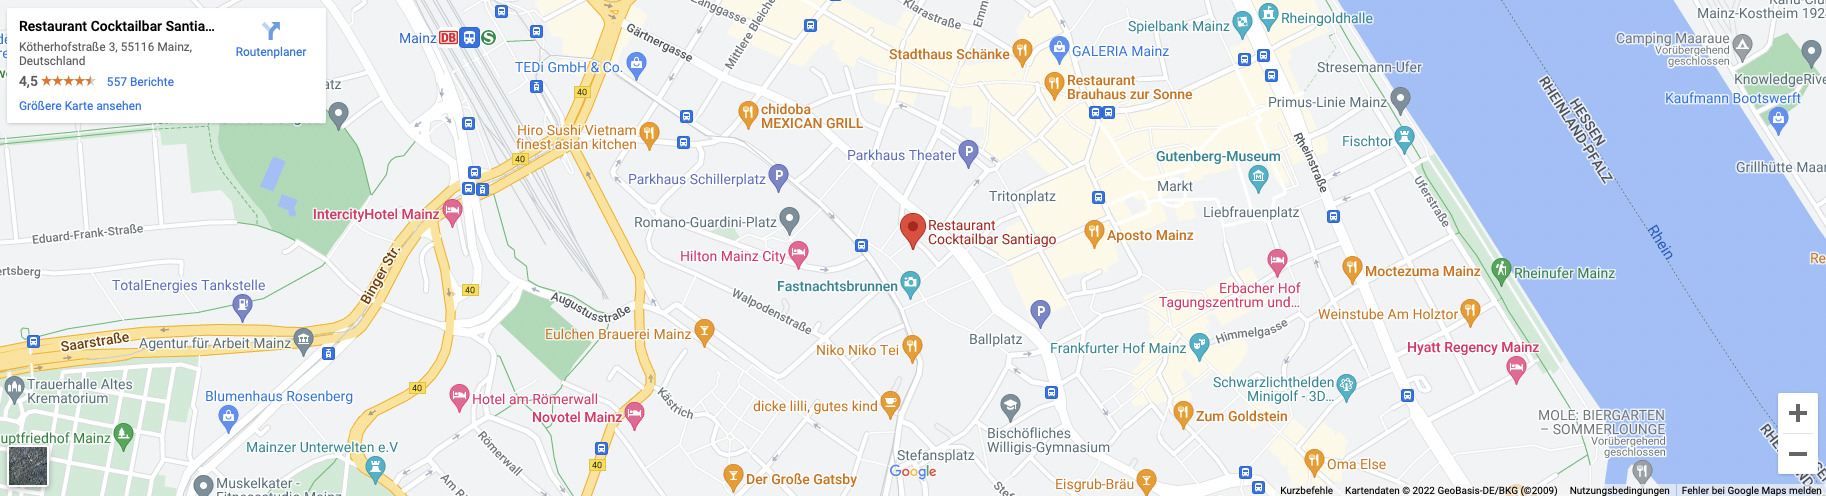 Google Maps Karte vom Santiago Bar in Mainz Standort